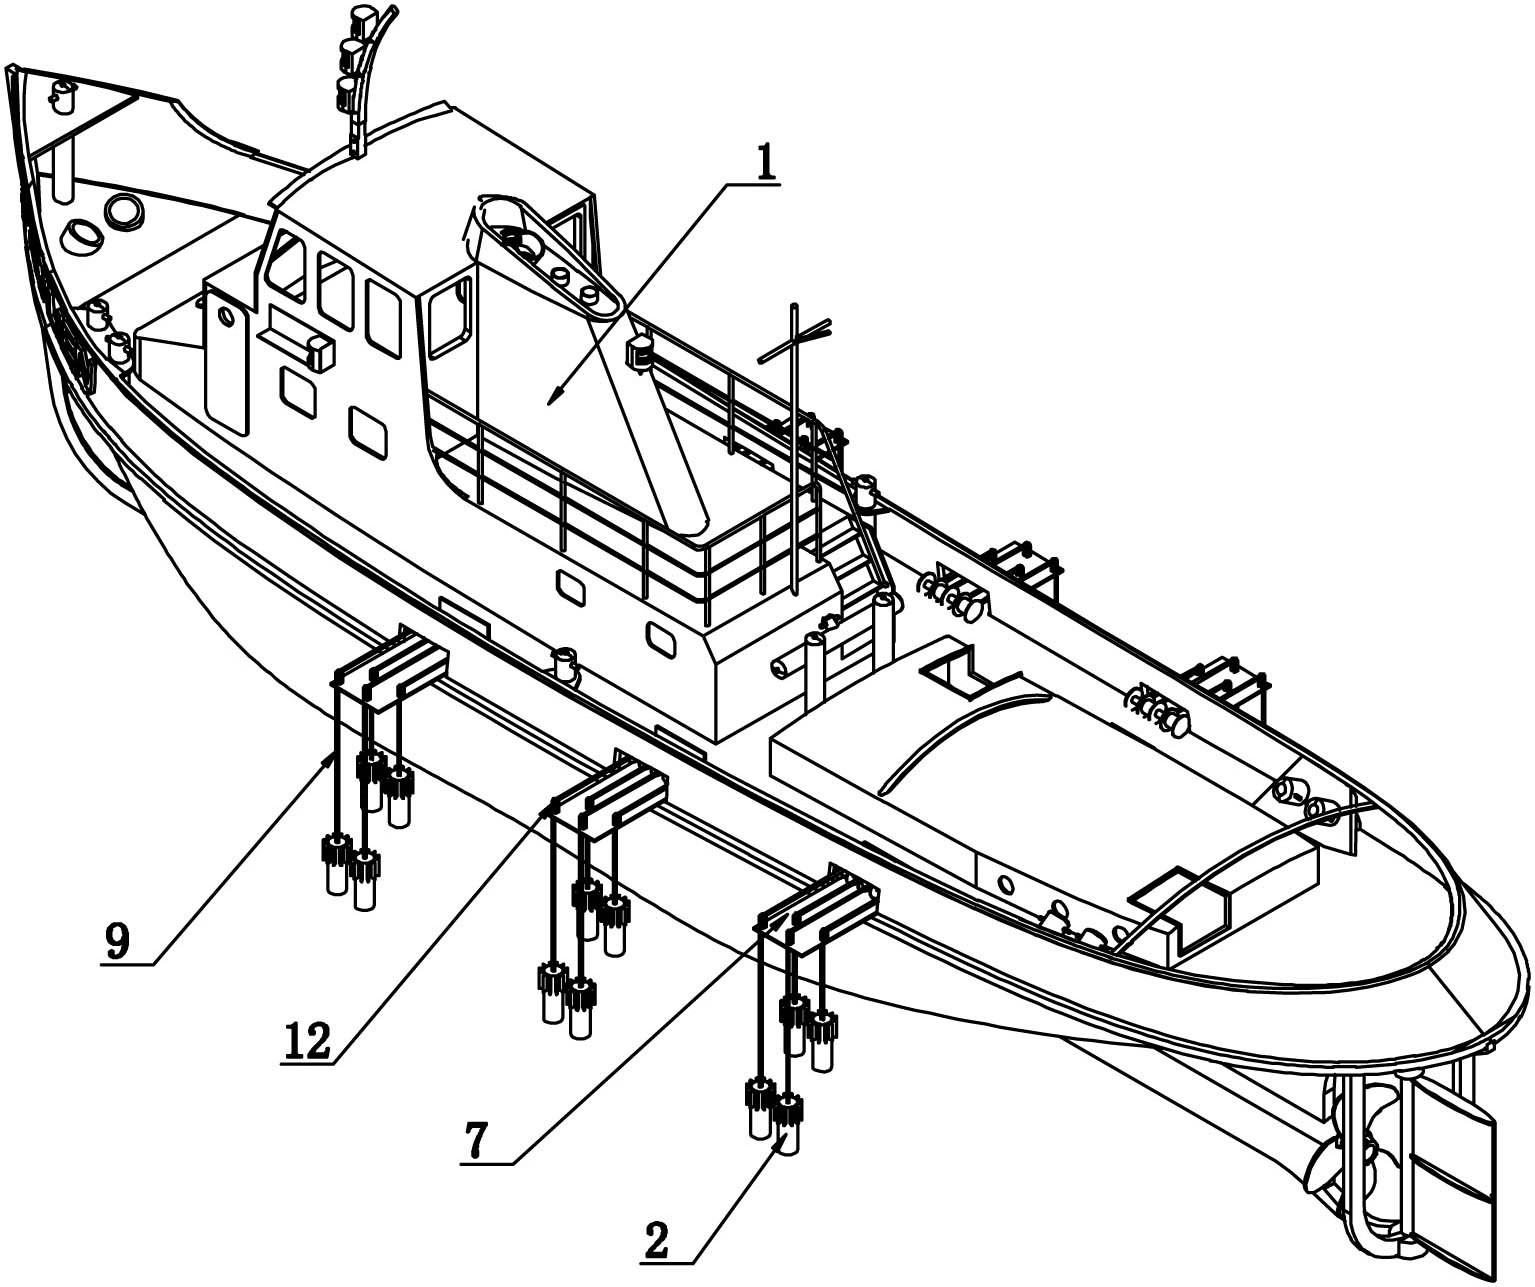 9米渔船设计图纸图片